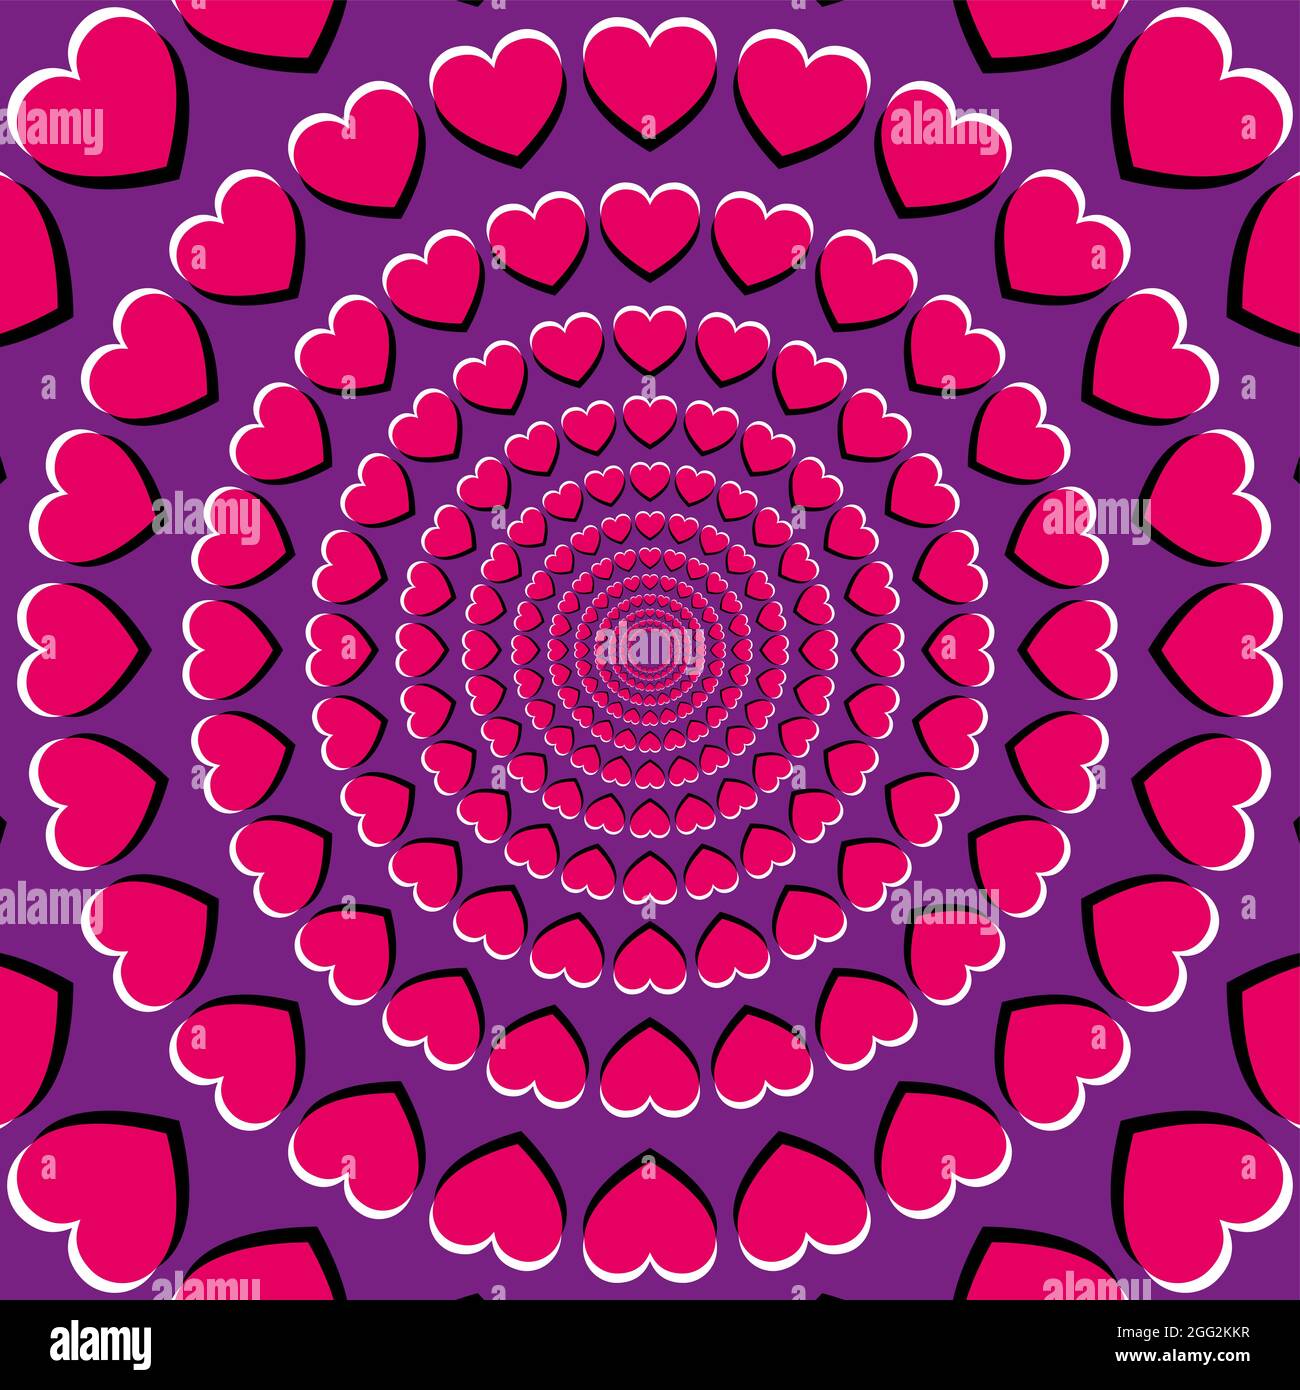 Ilusión de movimiento con símbolos de corazón. Ilusión periférica de deriva, hecha de corazones rosados sobre un fondo púrpura. Parece que los corazones se mueven y se mueven. Foto de stock